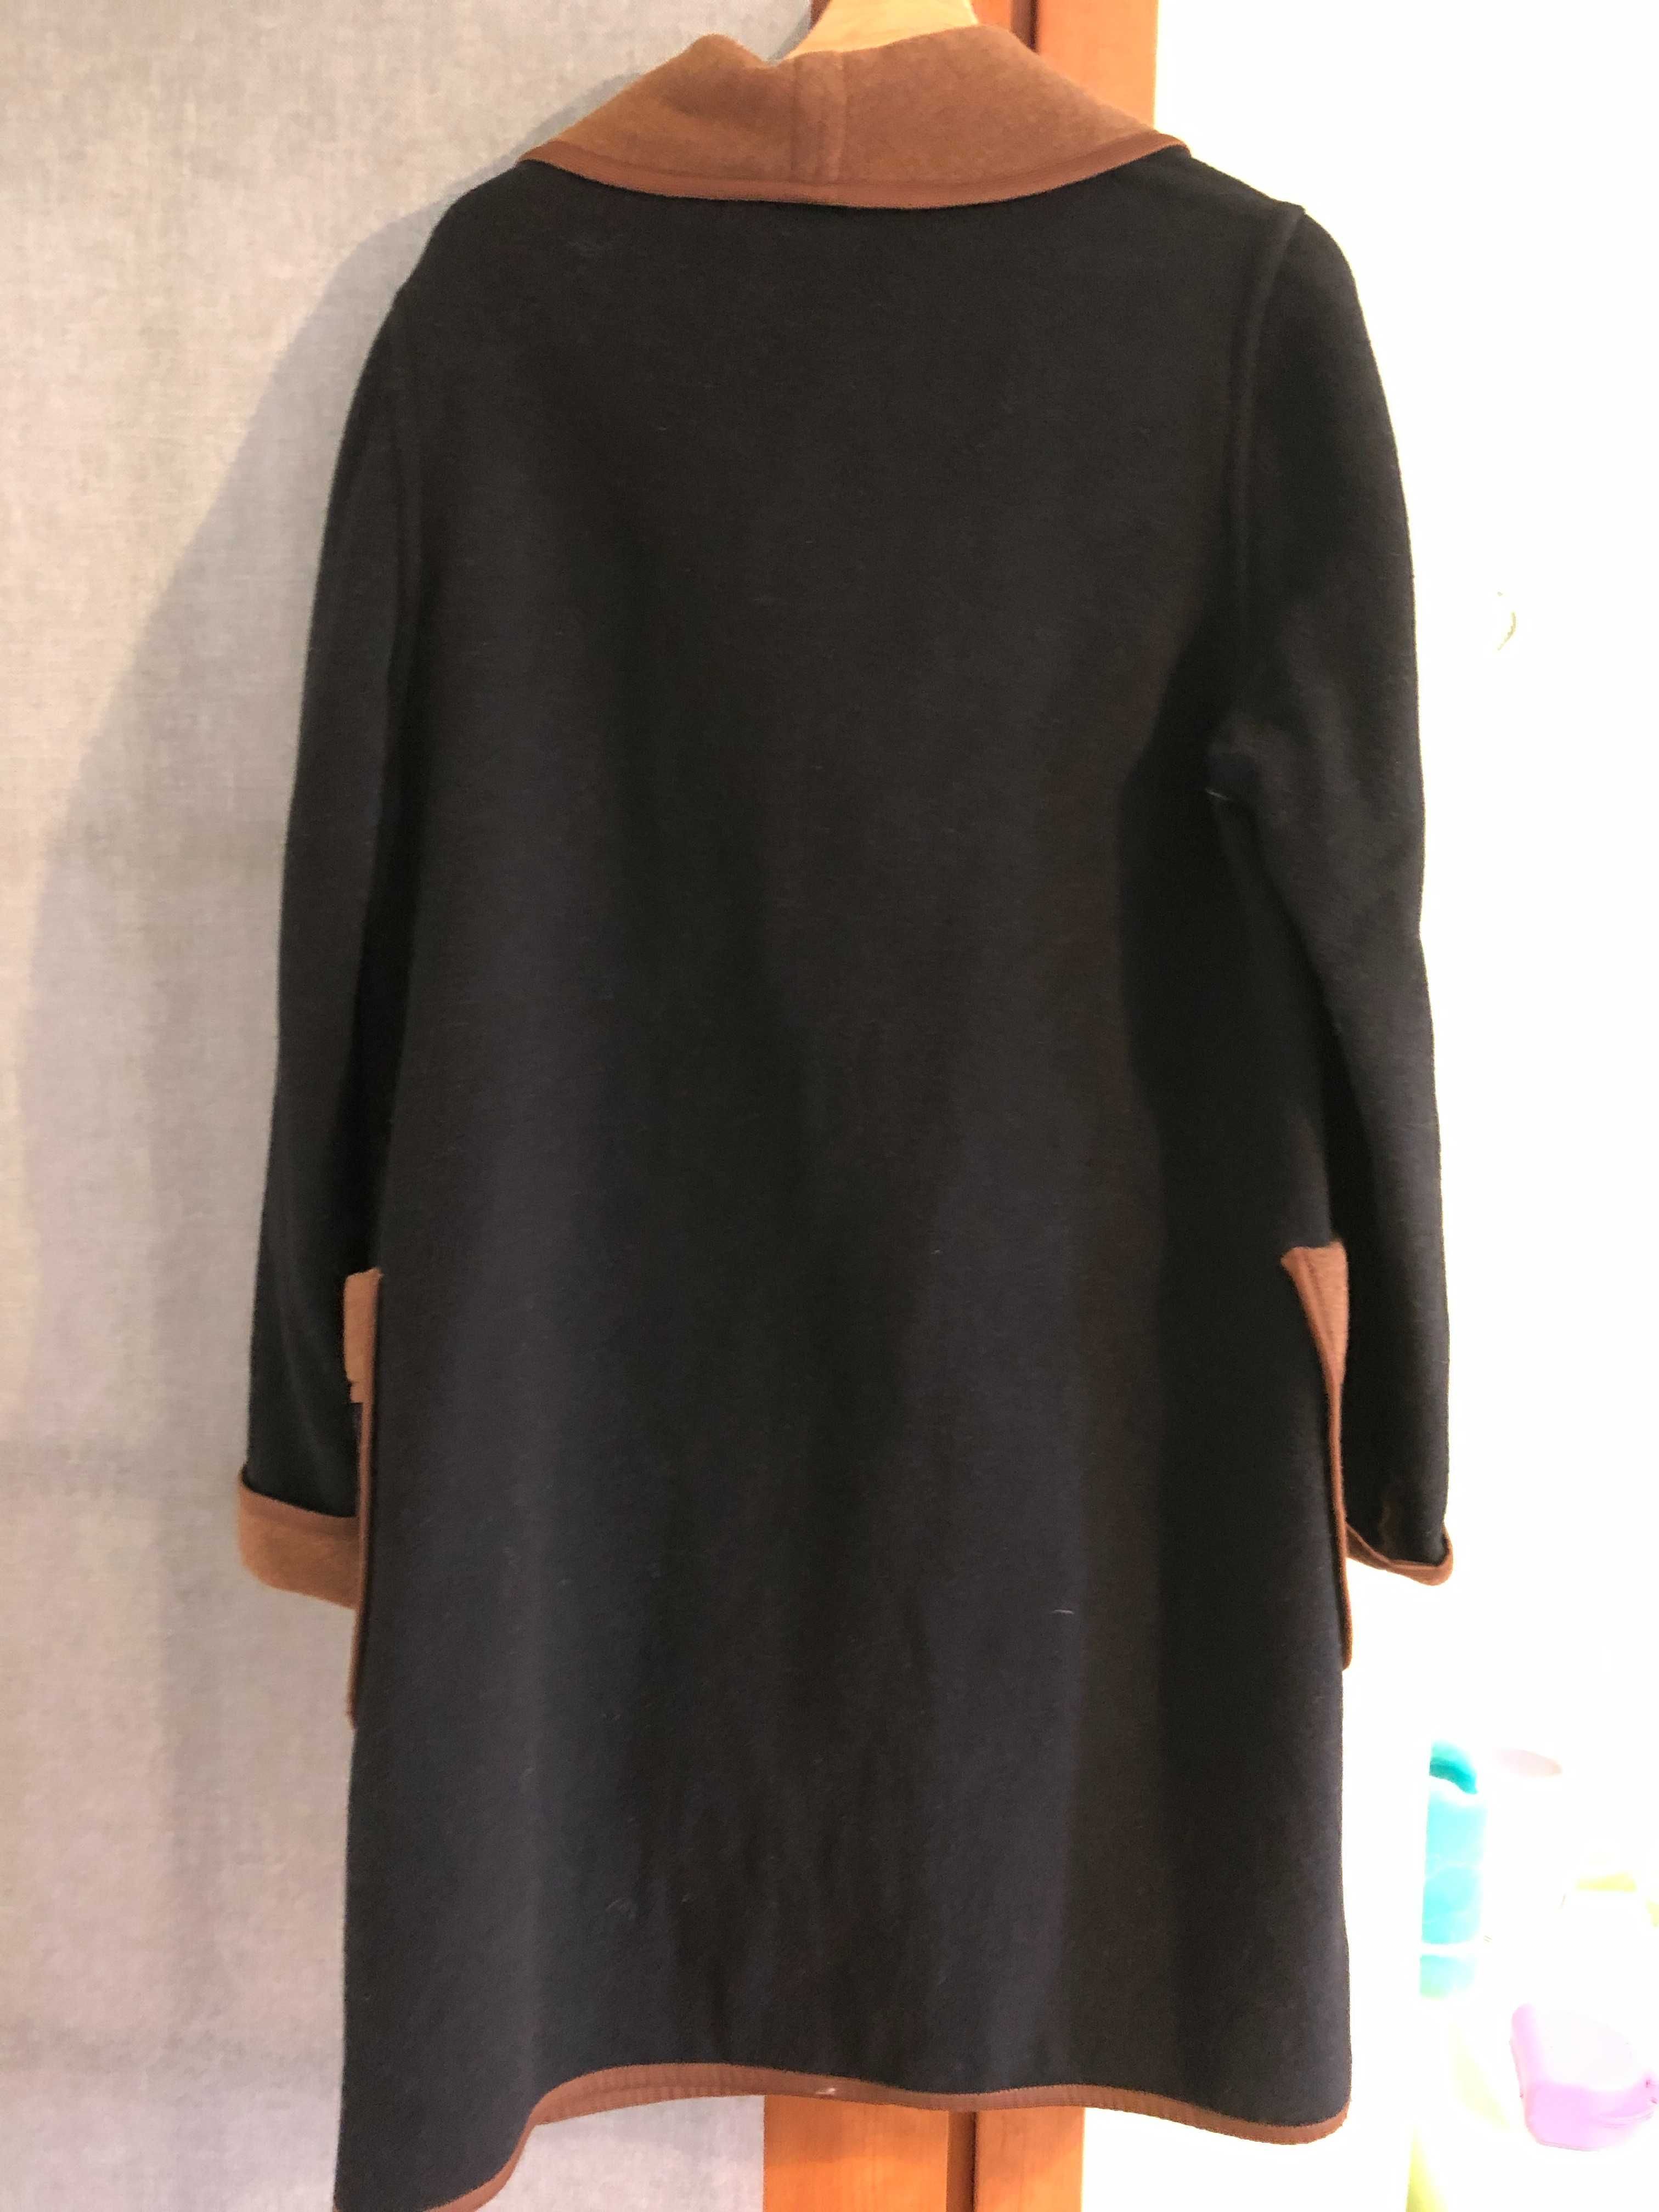 Brązowo-czarny wełniany płaszczyk. Rozmiar 164/96. XL